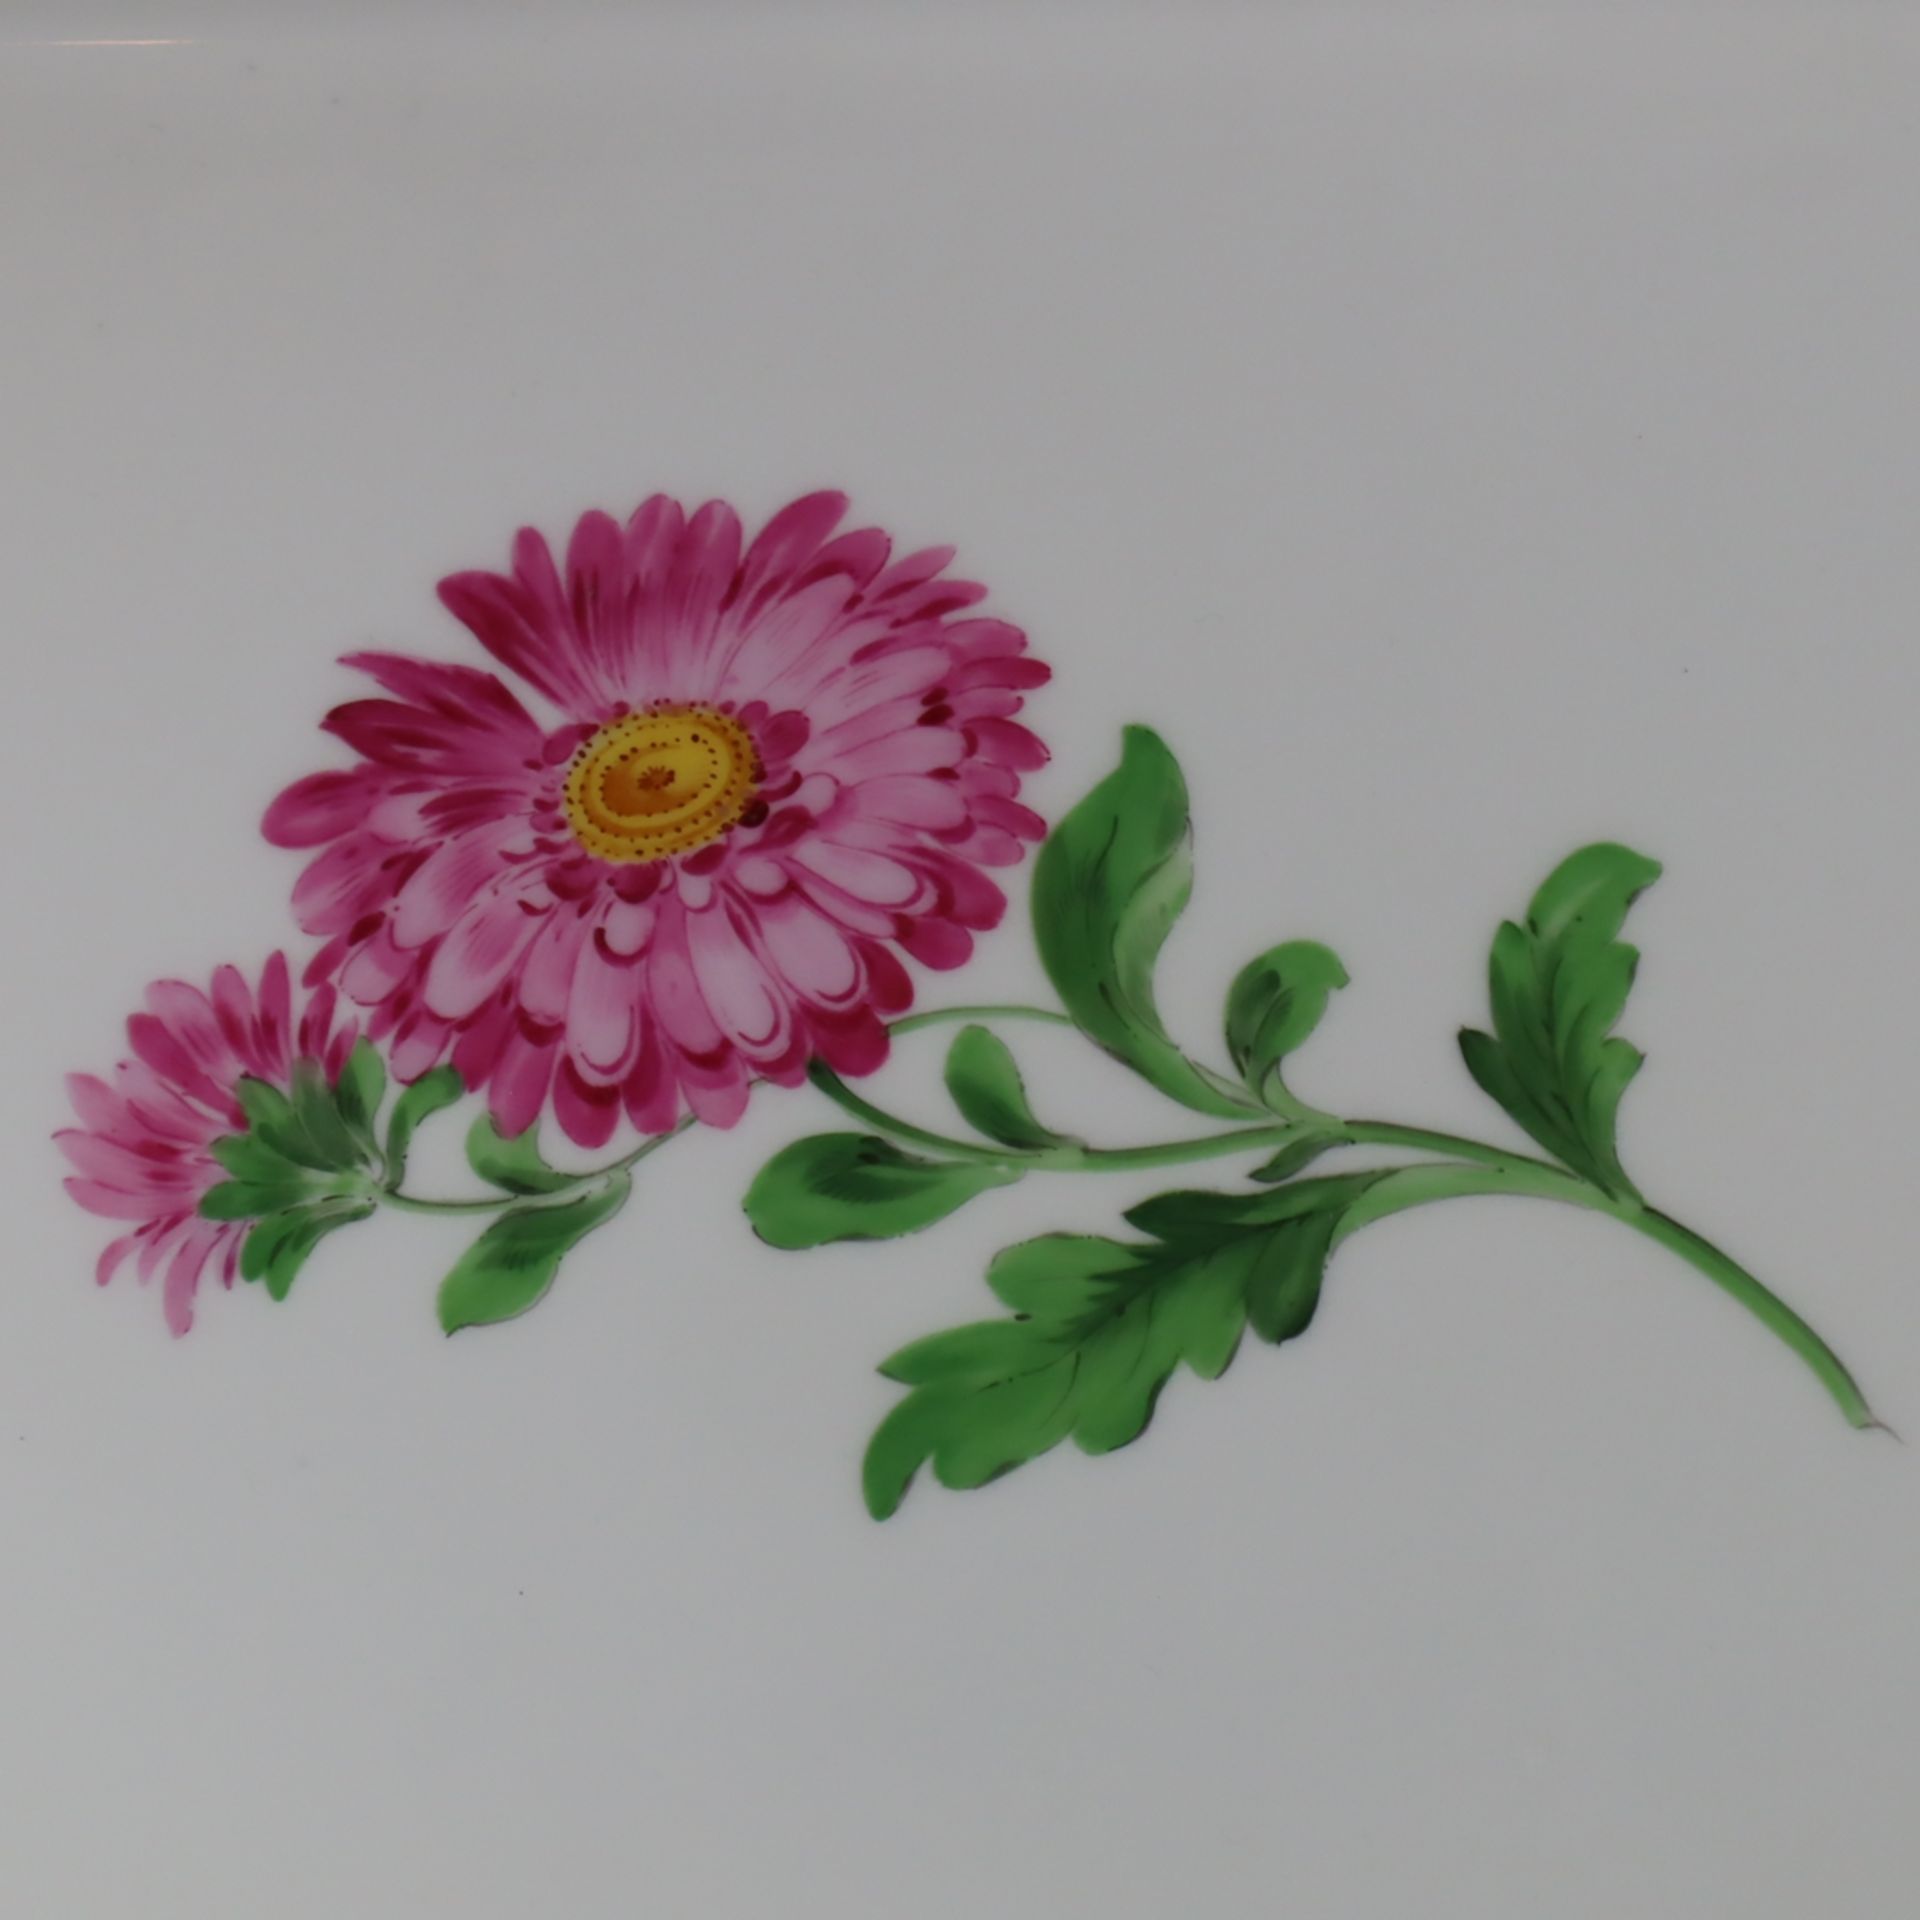 Kuchenplatte/Tablett - Meissen, 20. Jh., Porzellan, rechteckige Form mit zwei seitlichen Handhaben, - Bild 2 aus 6